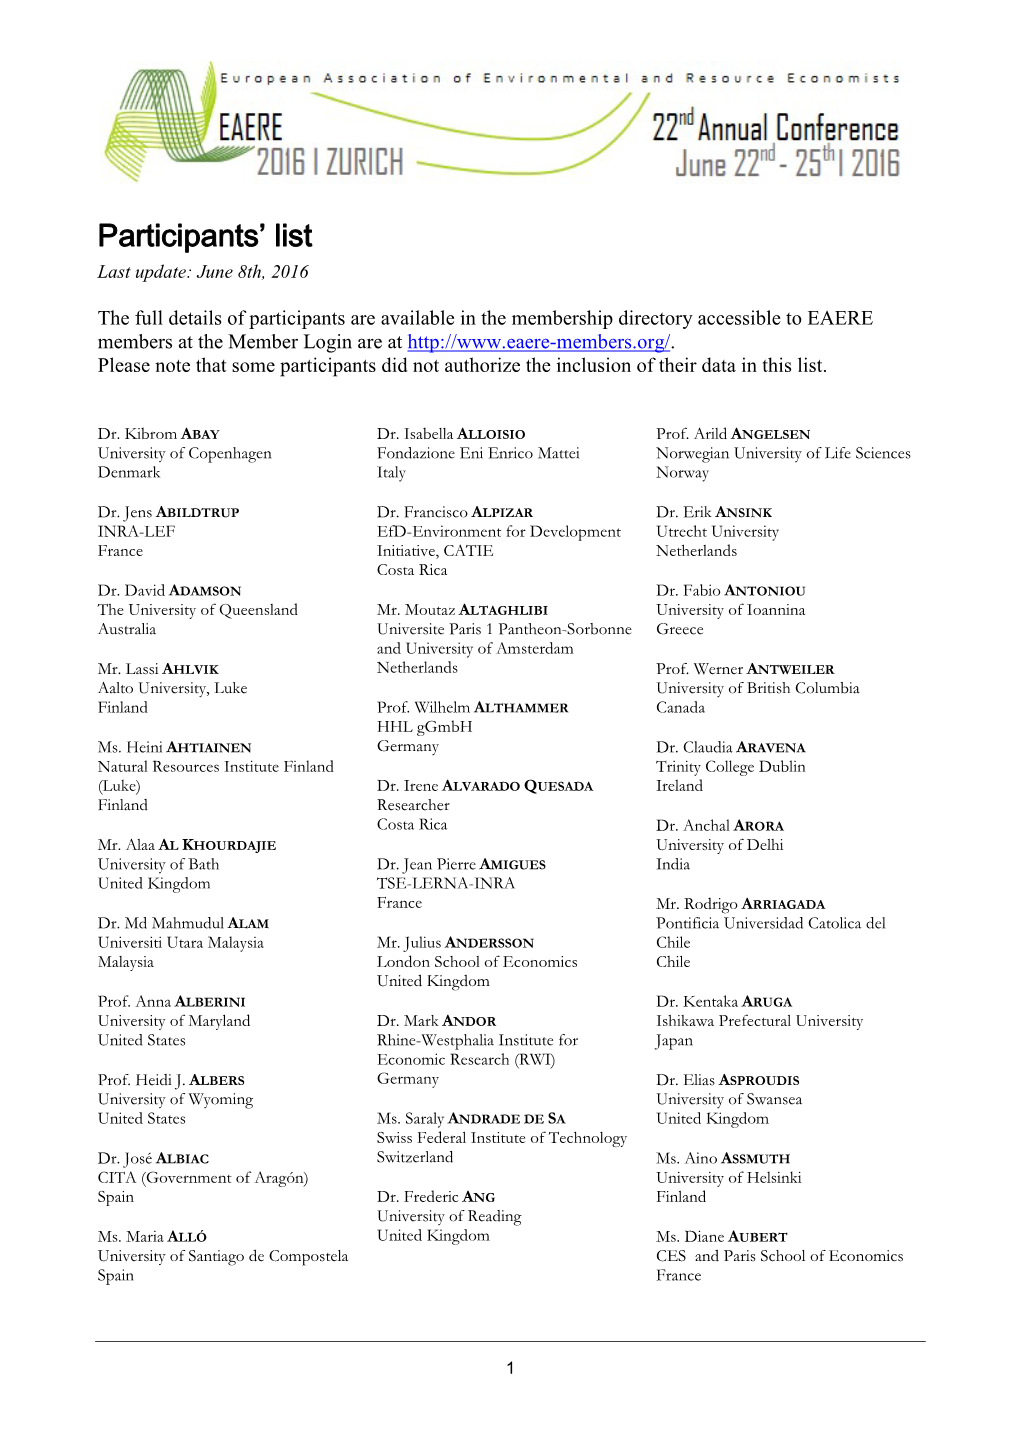 Participants' List